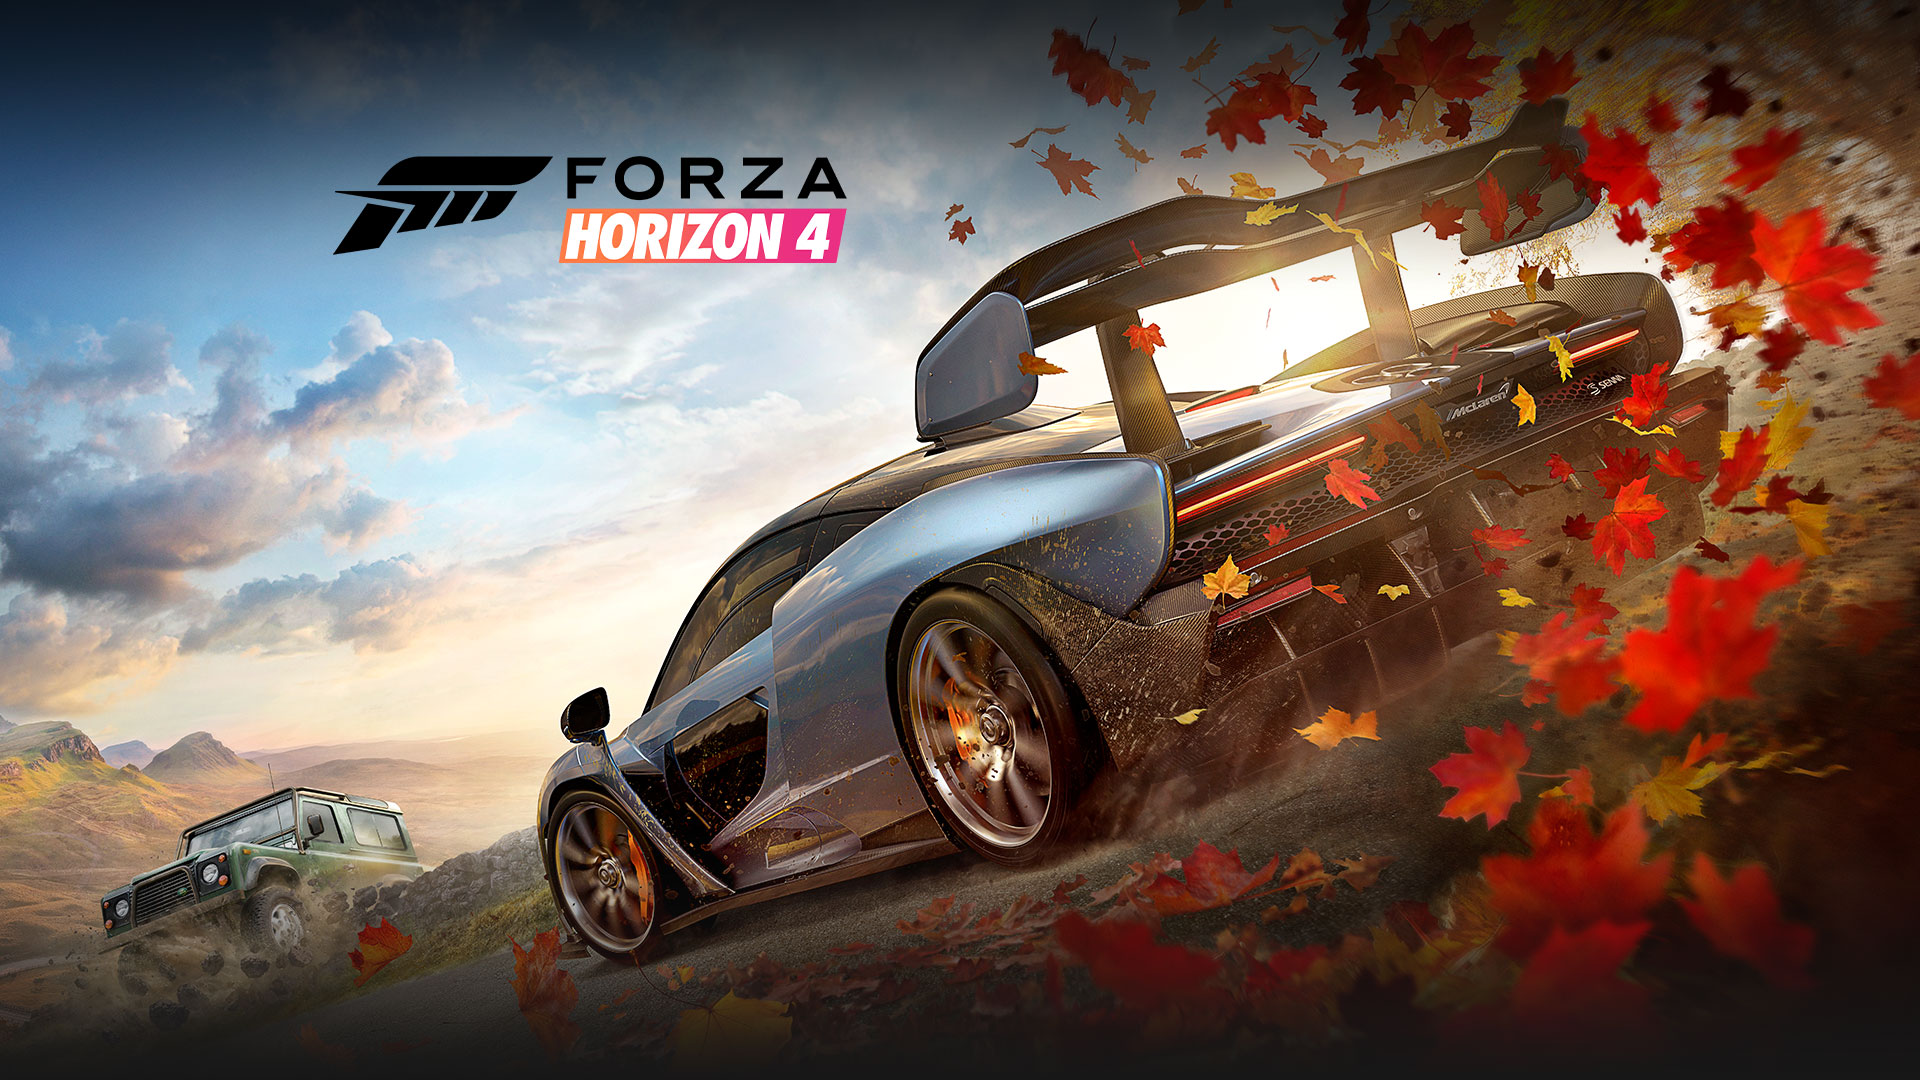 Forza Horizon 4, deux voitures, dont une suivie de feuilles